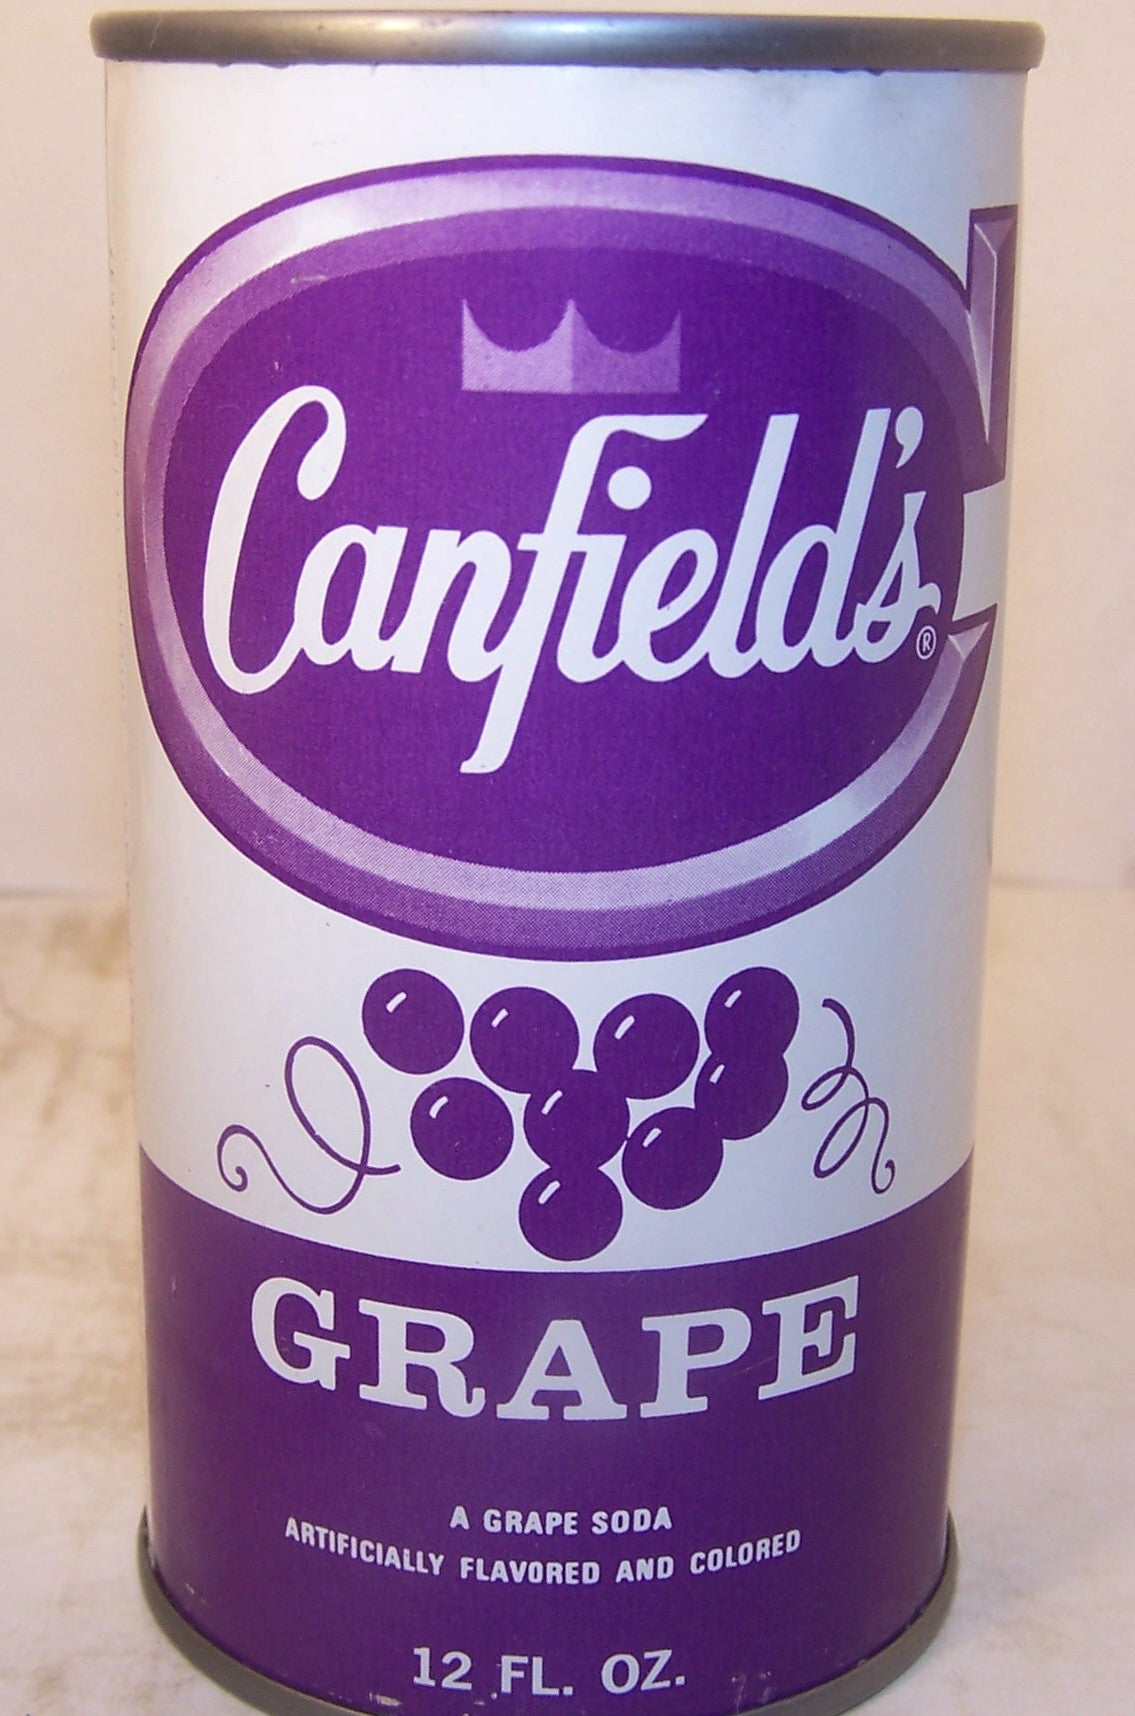 Canfield's Grape 2007 soda book page 136  C180-6 Grade 1/1+